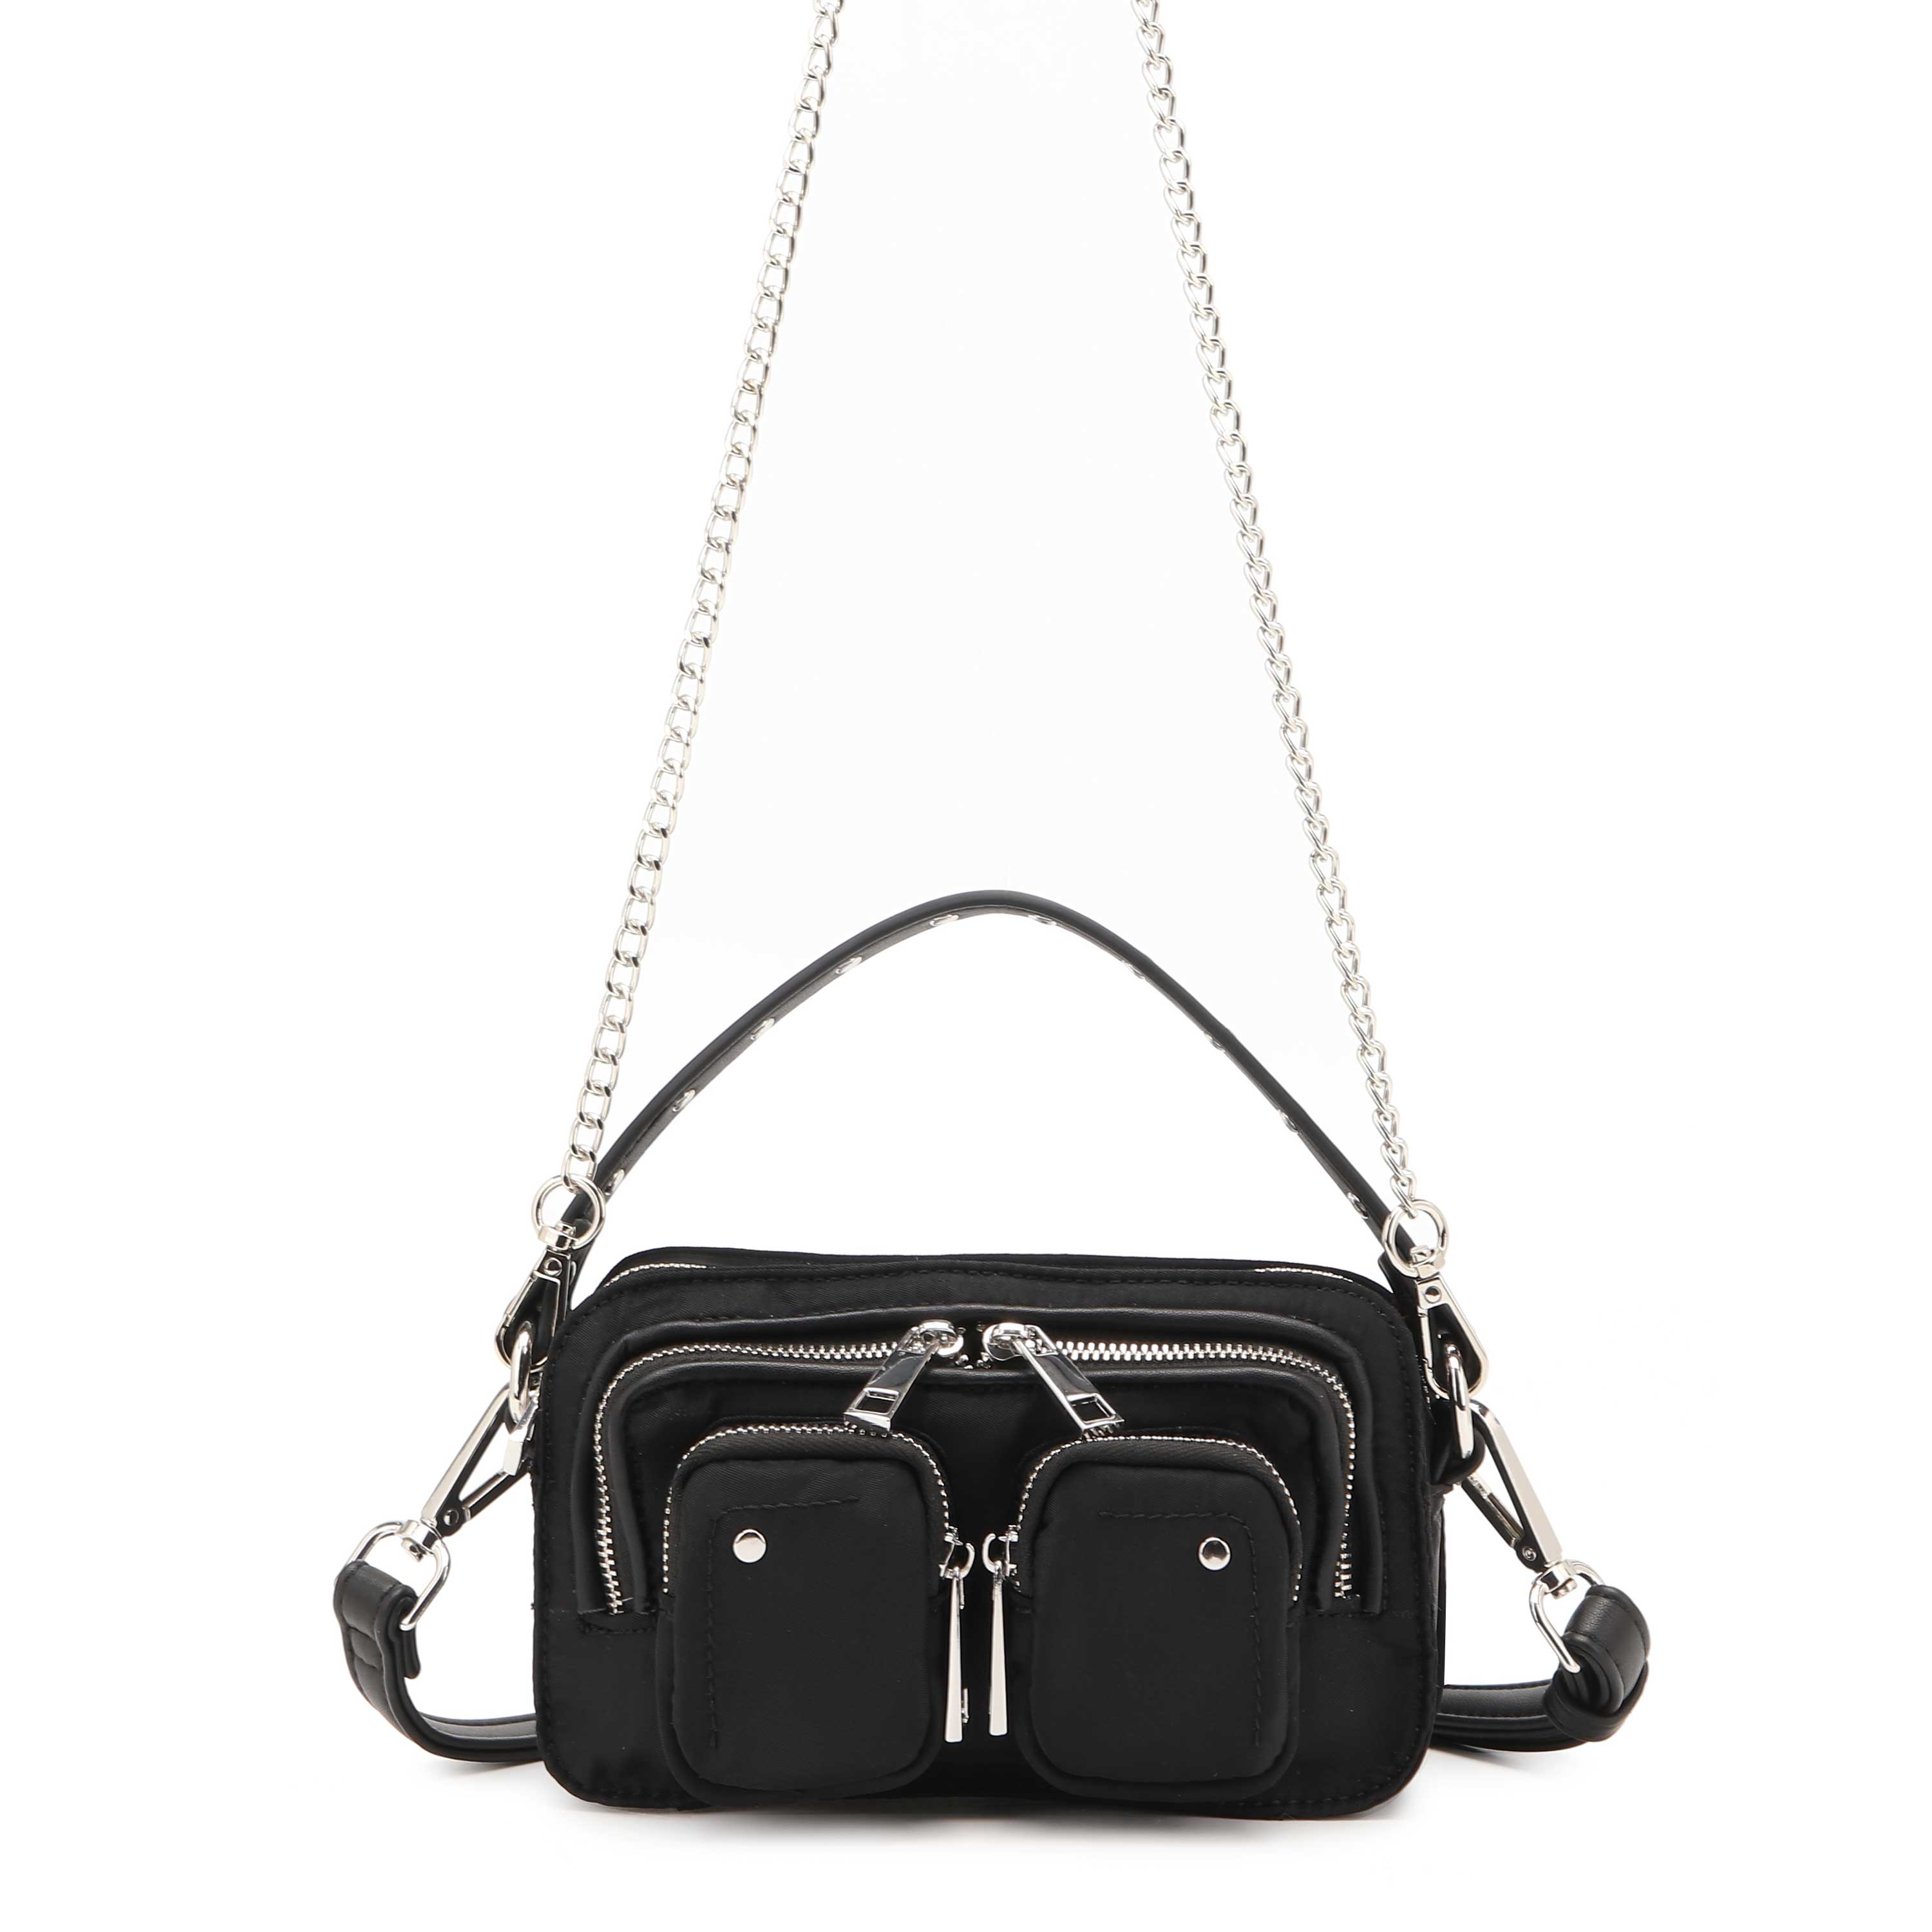 this handbag from helena bonham carter : r/handbags